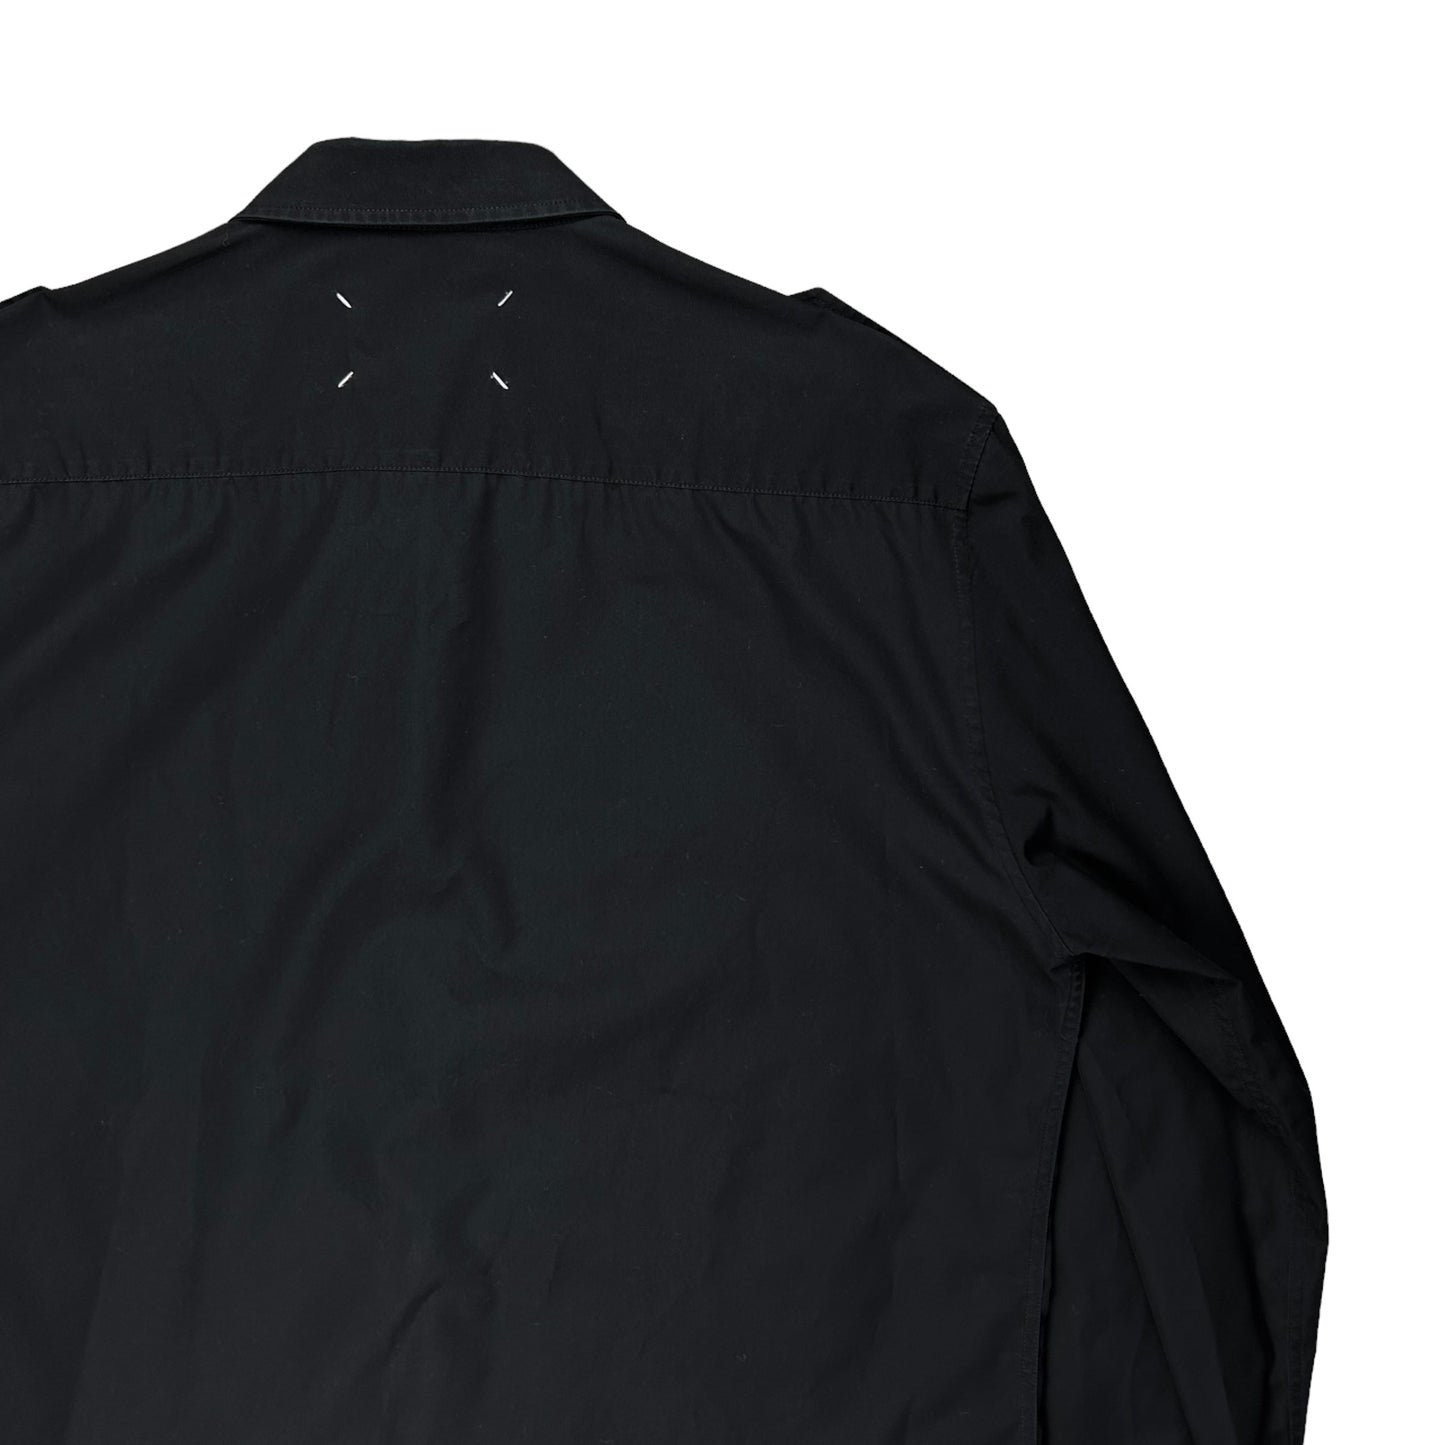 Maison Magiela Military Button Up Shirt - SS17